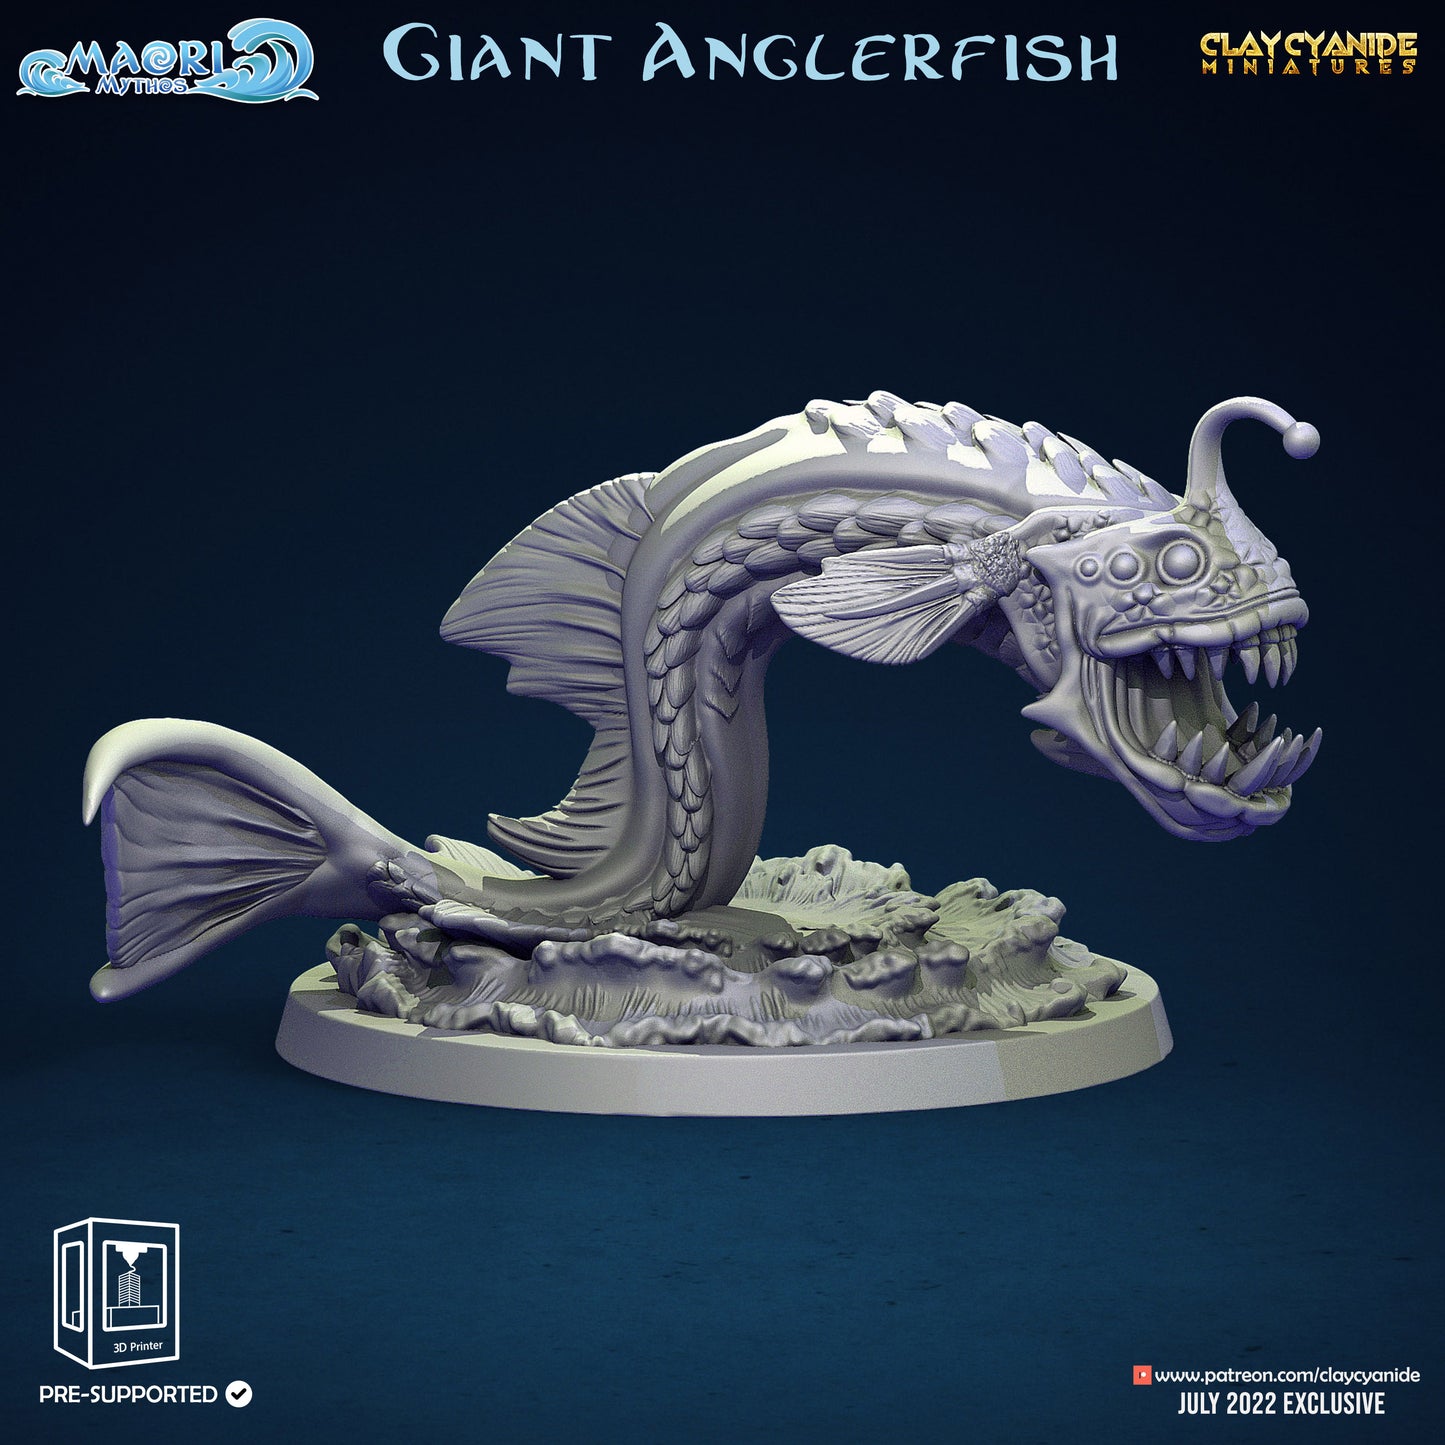 Giant Anglerfish